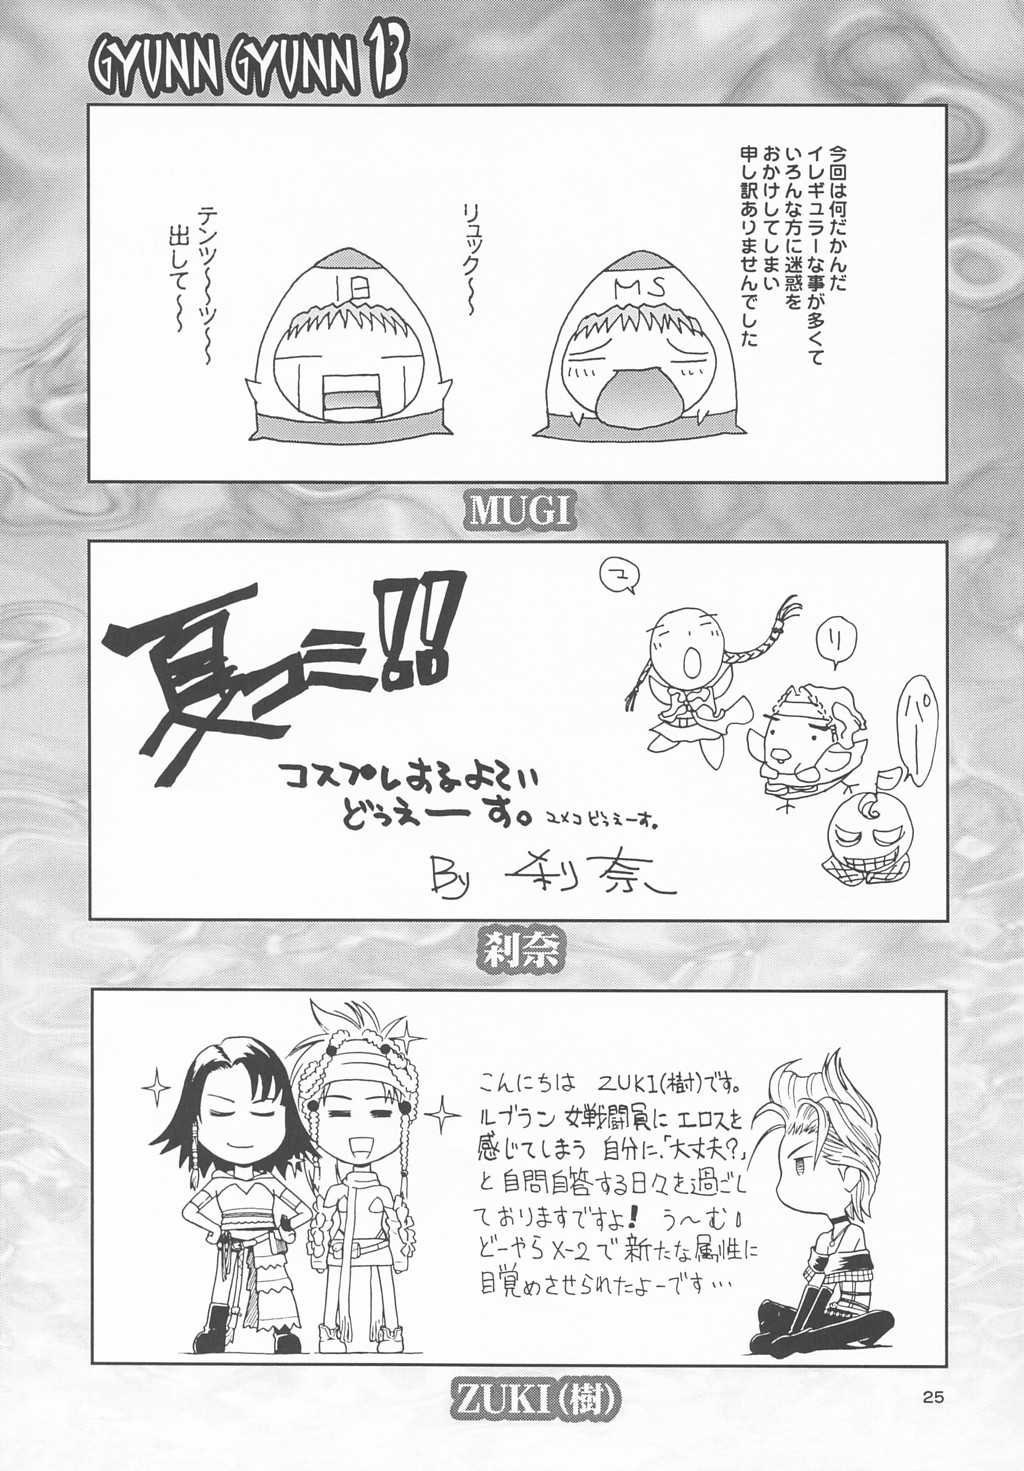 (CR33) [Shiitake (Mugi)] GYUNN GYUNN 13 (Final Fantasy X-2) [椎茸 (Mugi)] GYUNN GYUNN 13 (ファイナルファンタジー X-2)